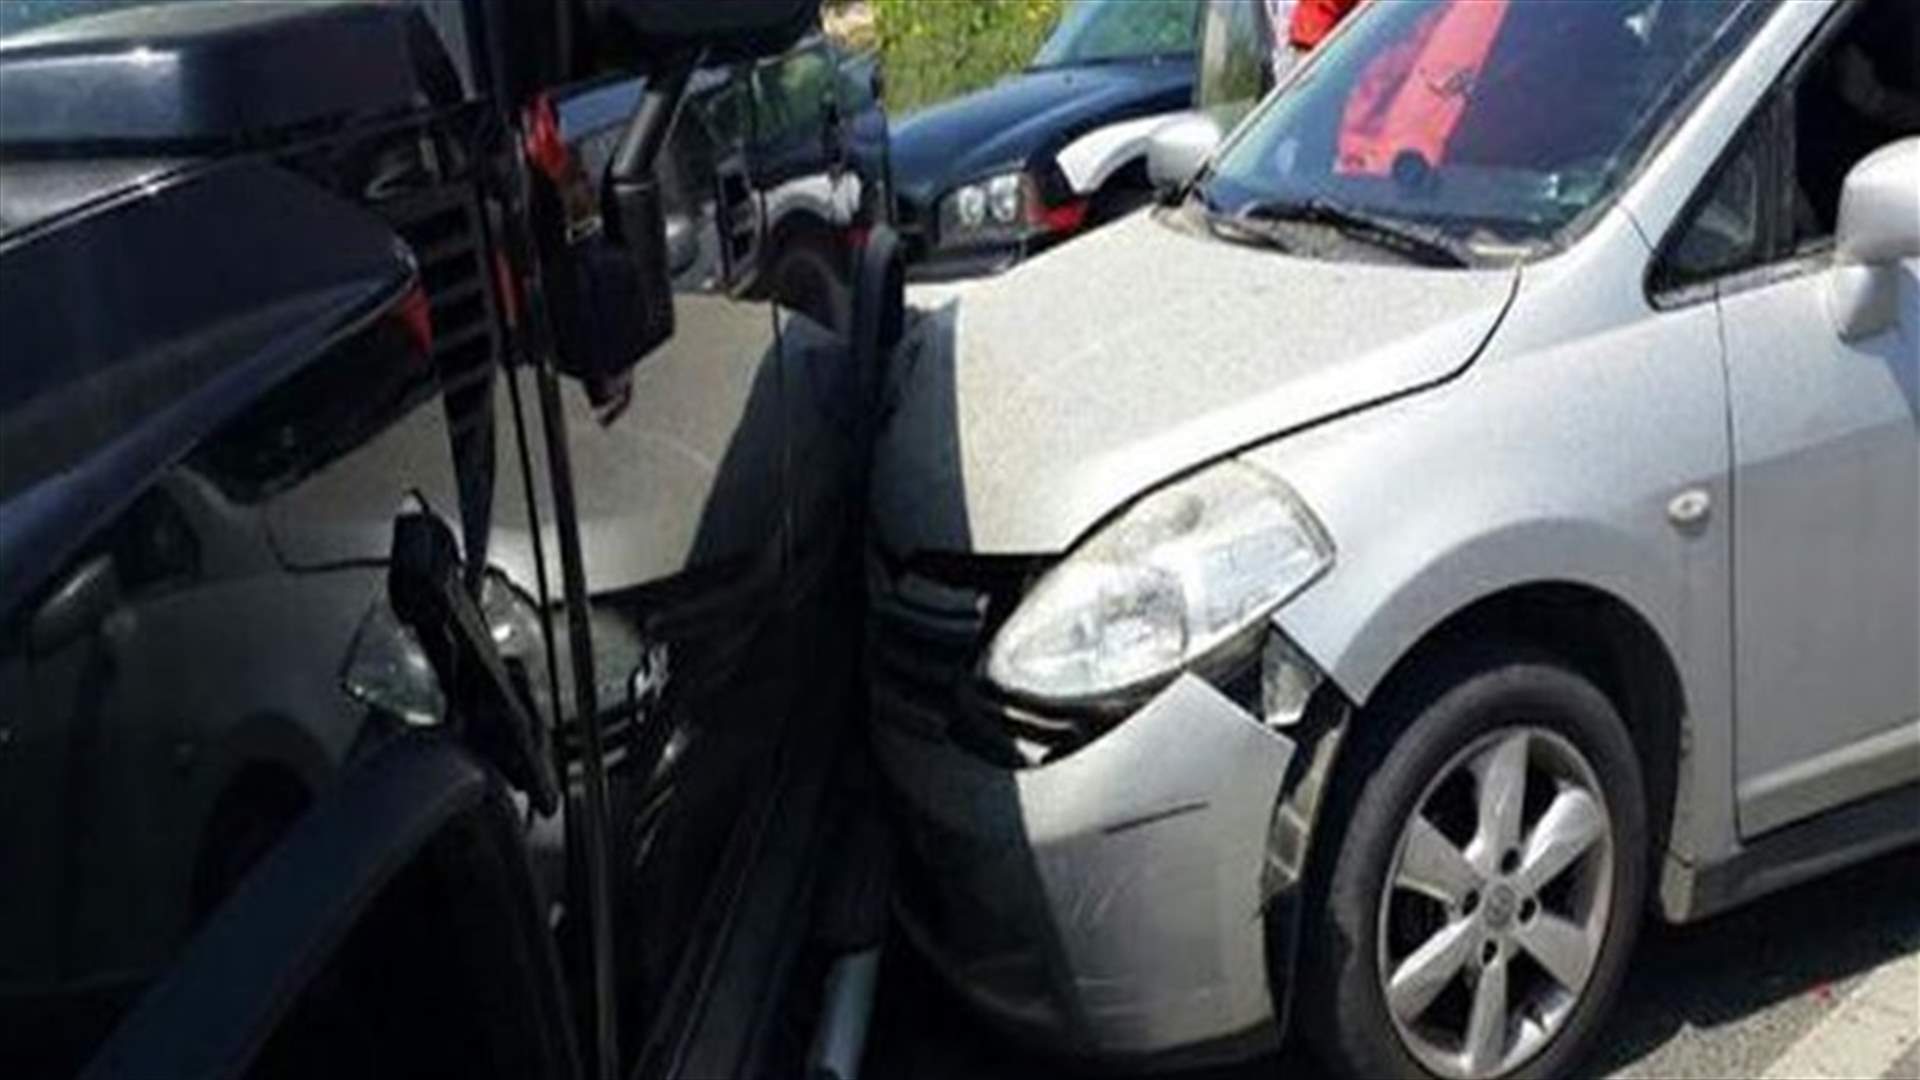 بالصور: جريج بحادث سير بين 5 سيارات على أوتوستراد شكا 